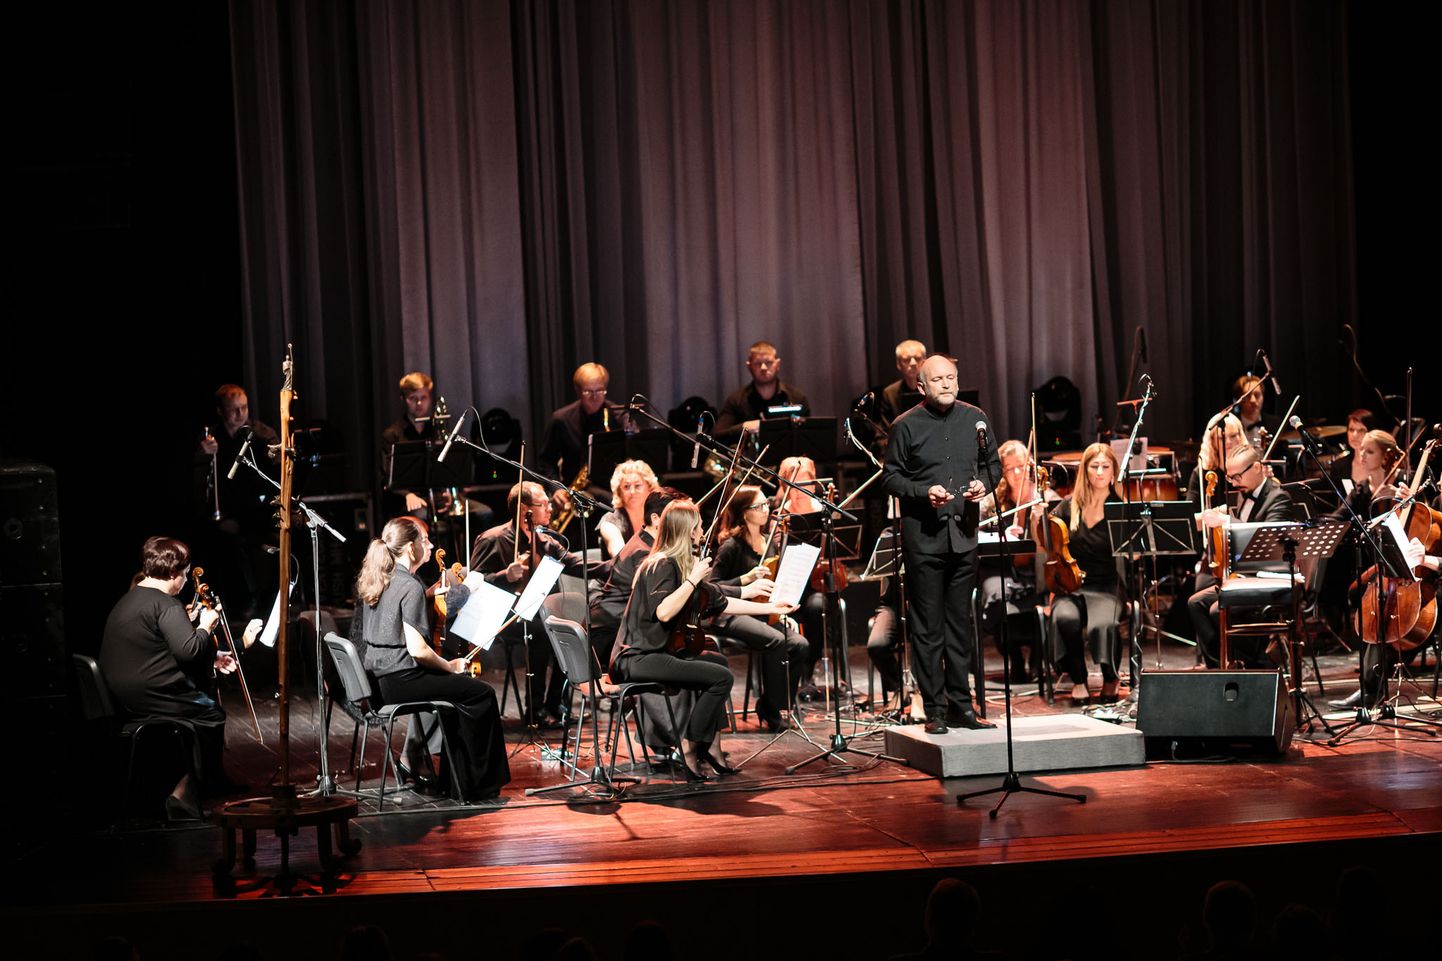 Нарвский симфонический оркестр в выходные выйдет на сцену большим составом - 45 музыкантов, к которым присоединятся около десяти молодых участников музыкального форума.